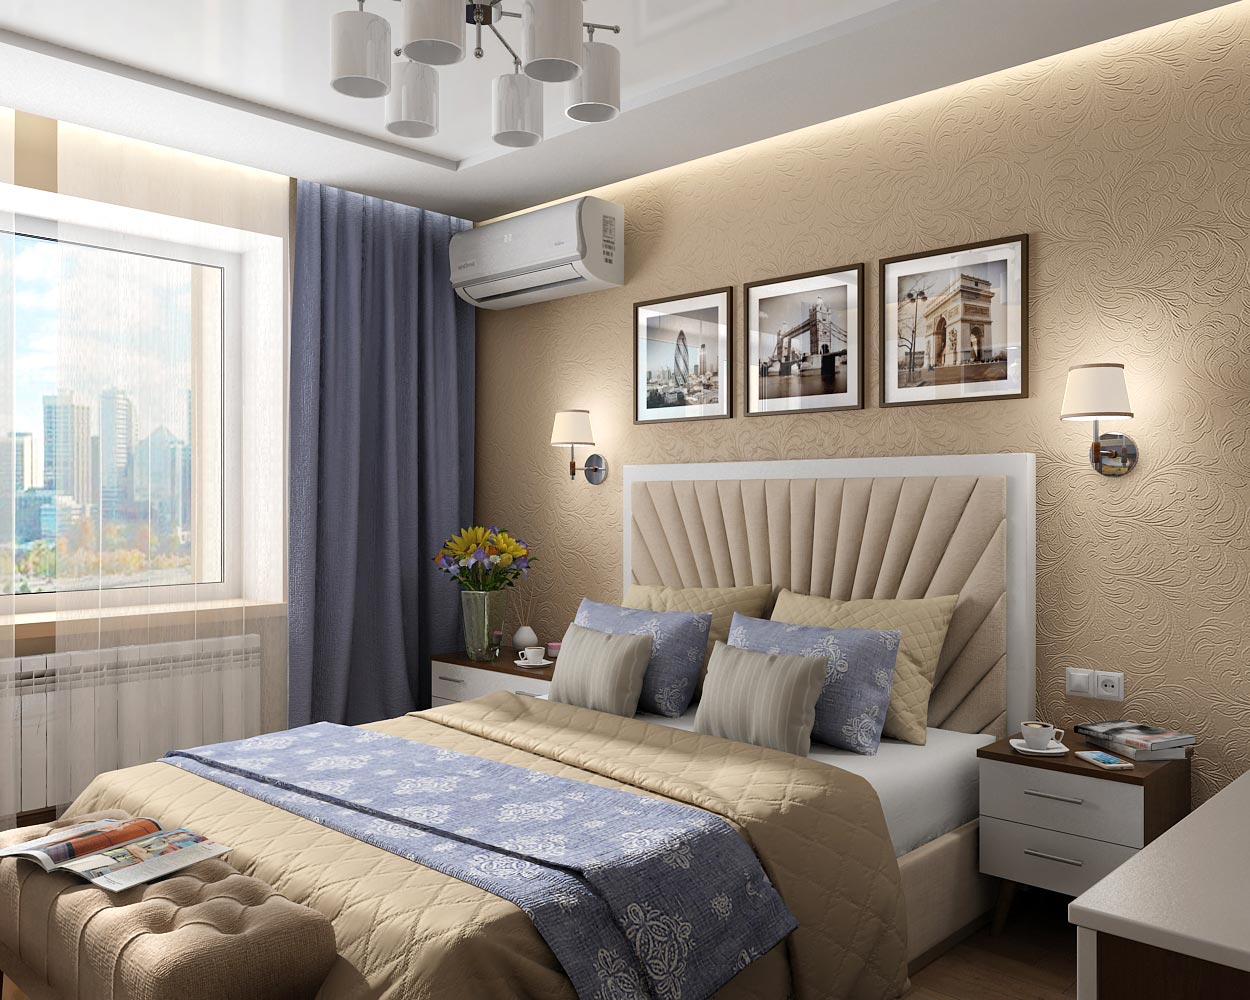 Projeto de design de interiores para um quarto em um apartamento em Chernigov em 3d max vray 1.5 imagem